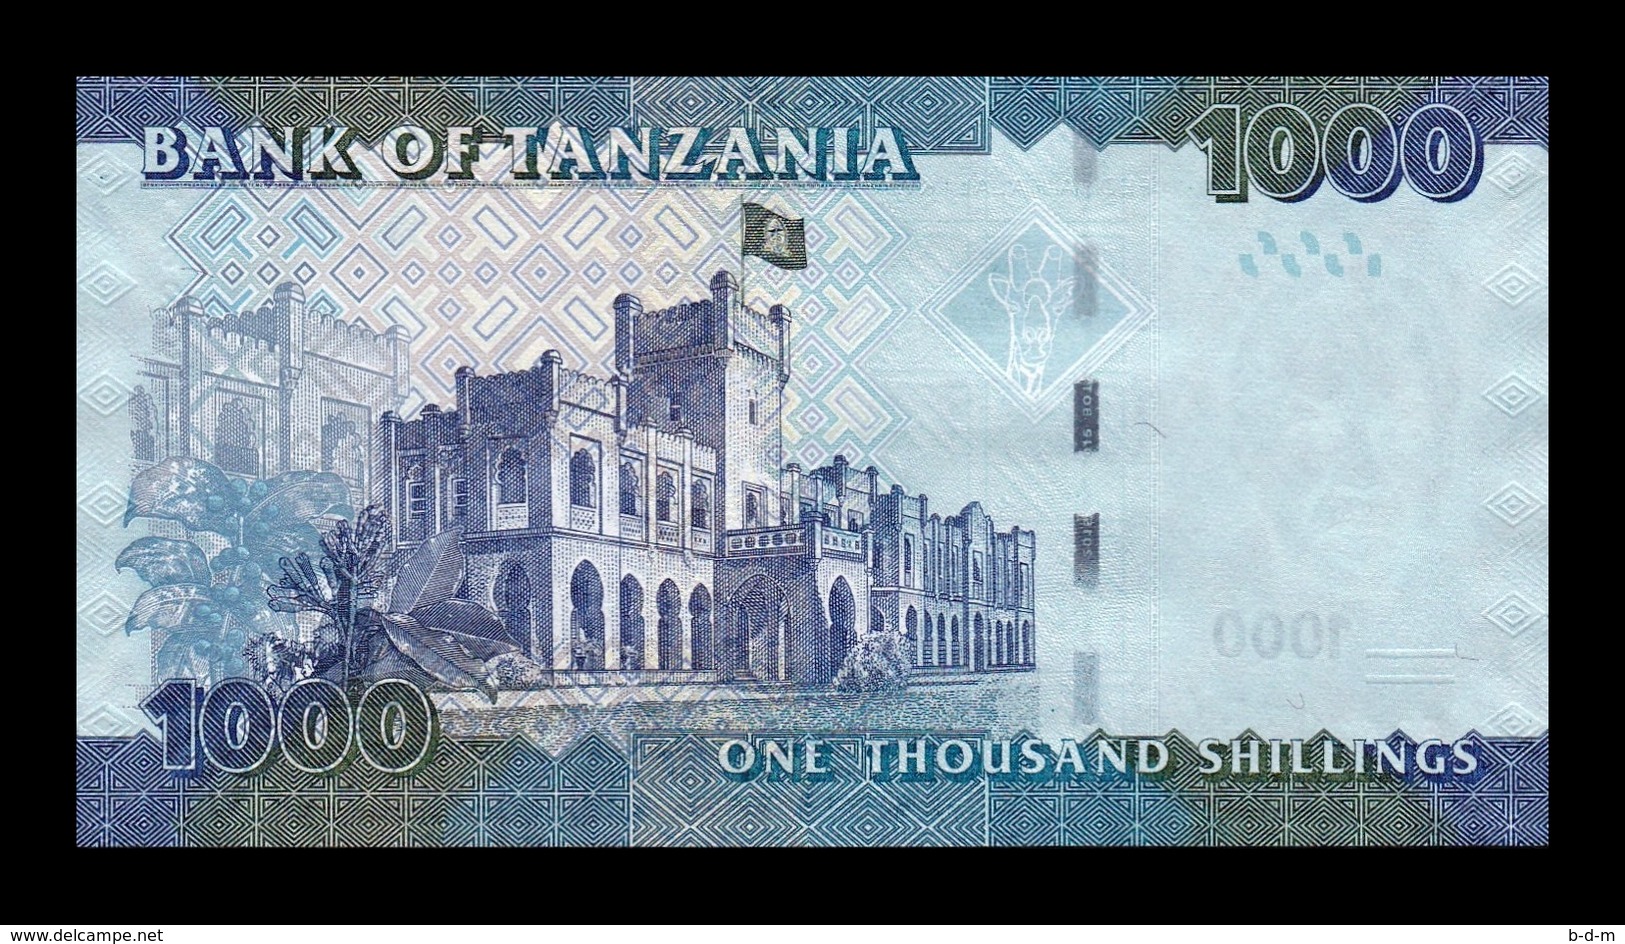 Tanzania 1000 Shillings 2015 Pick 41b SC UNC - Tansania